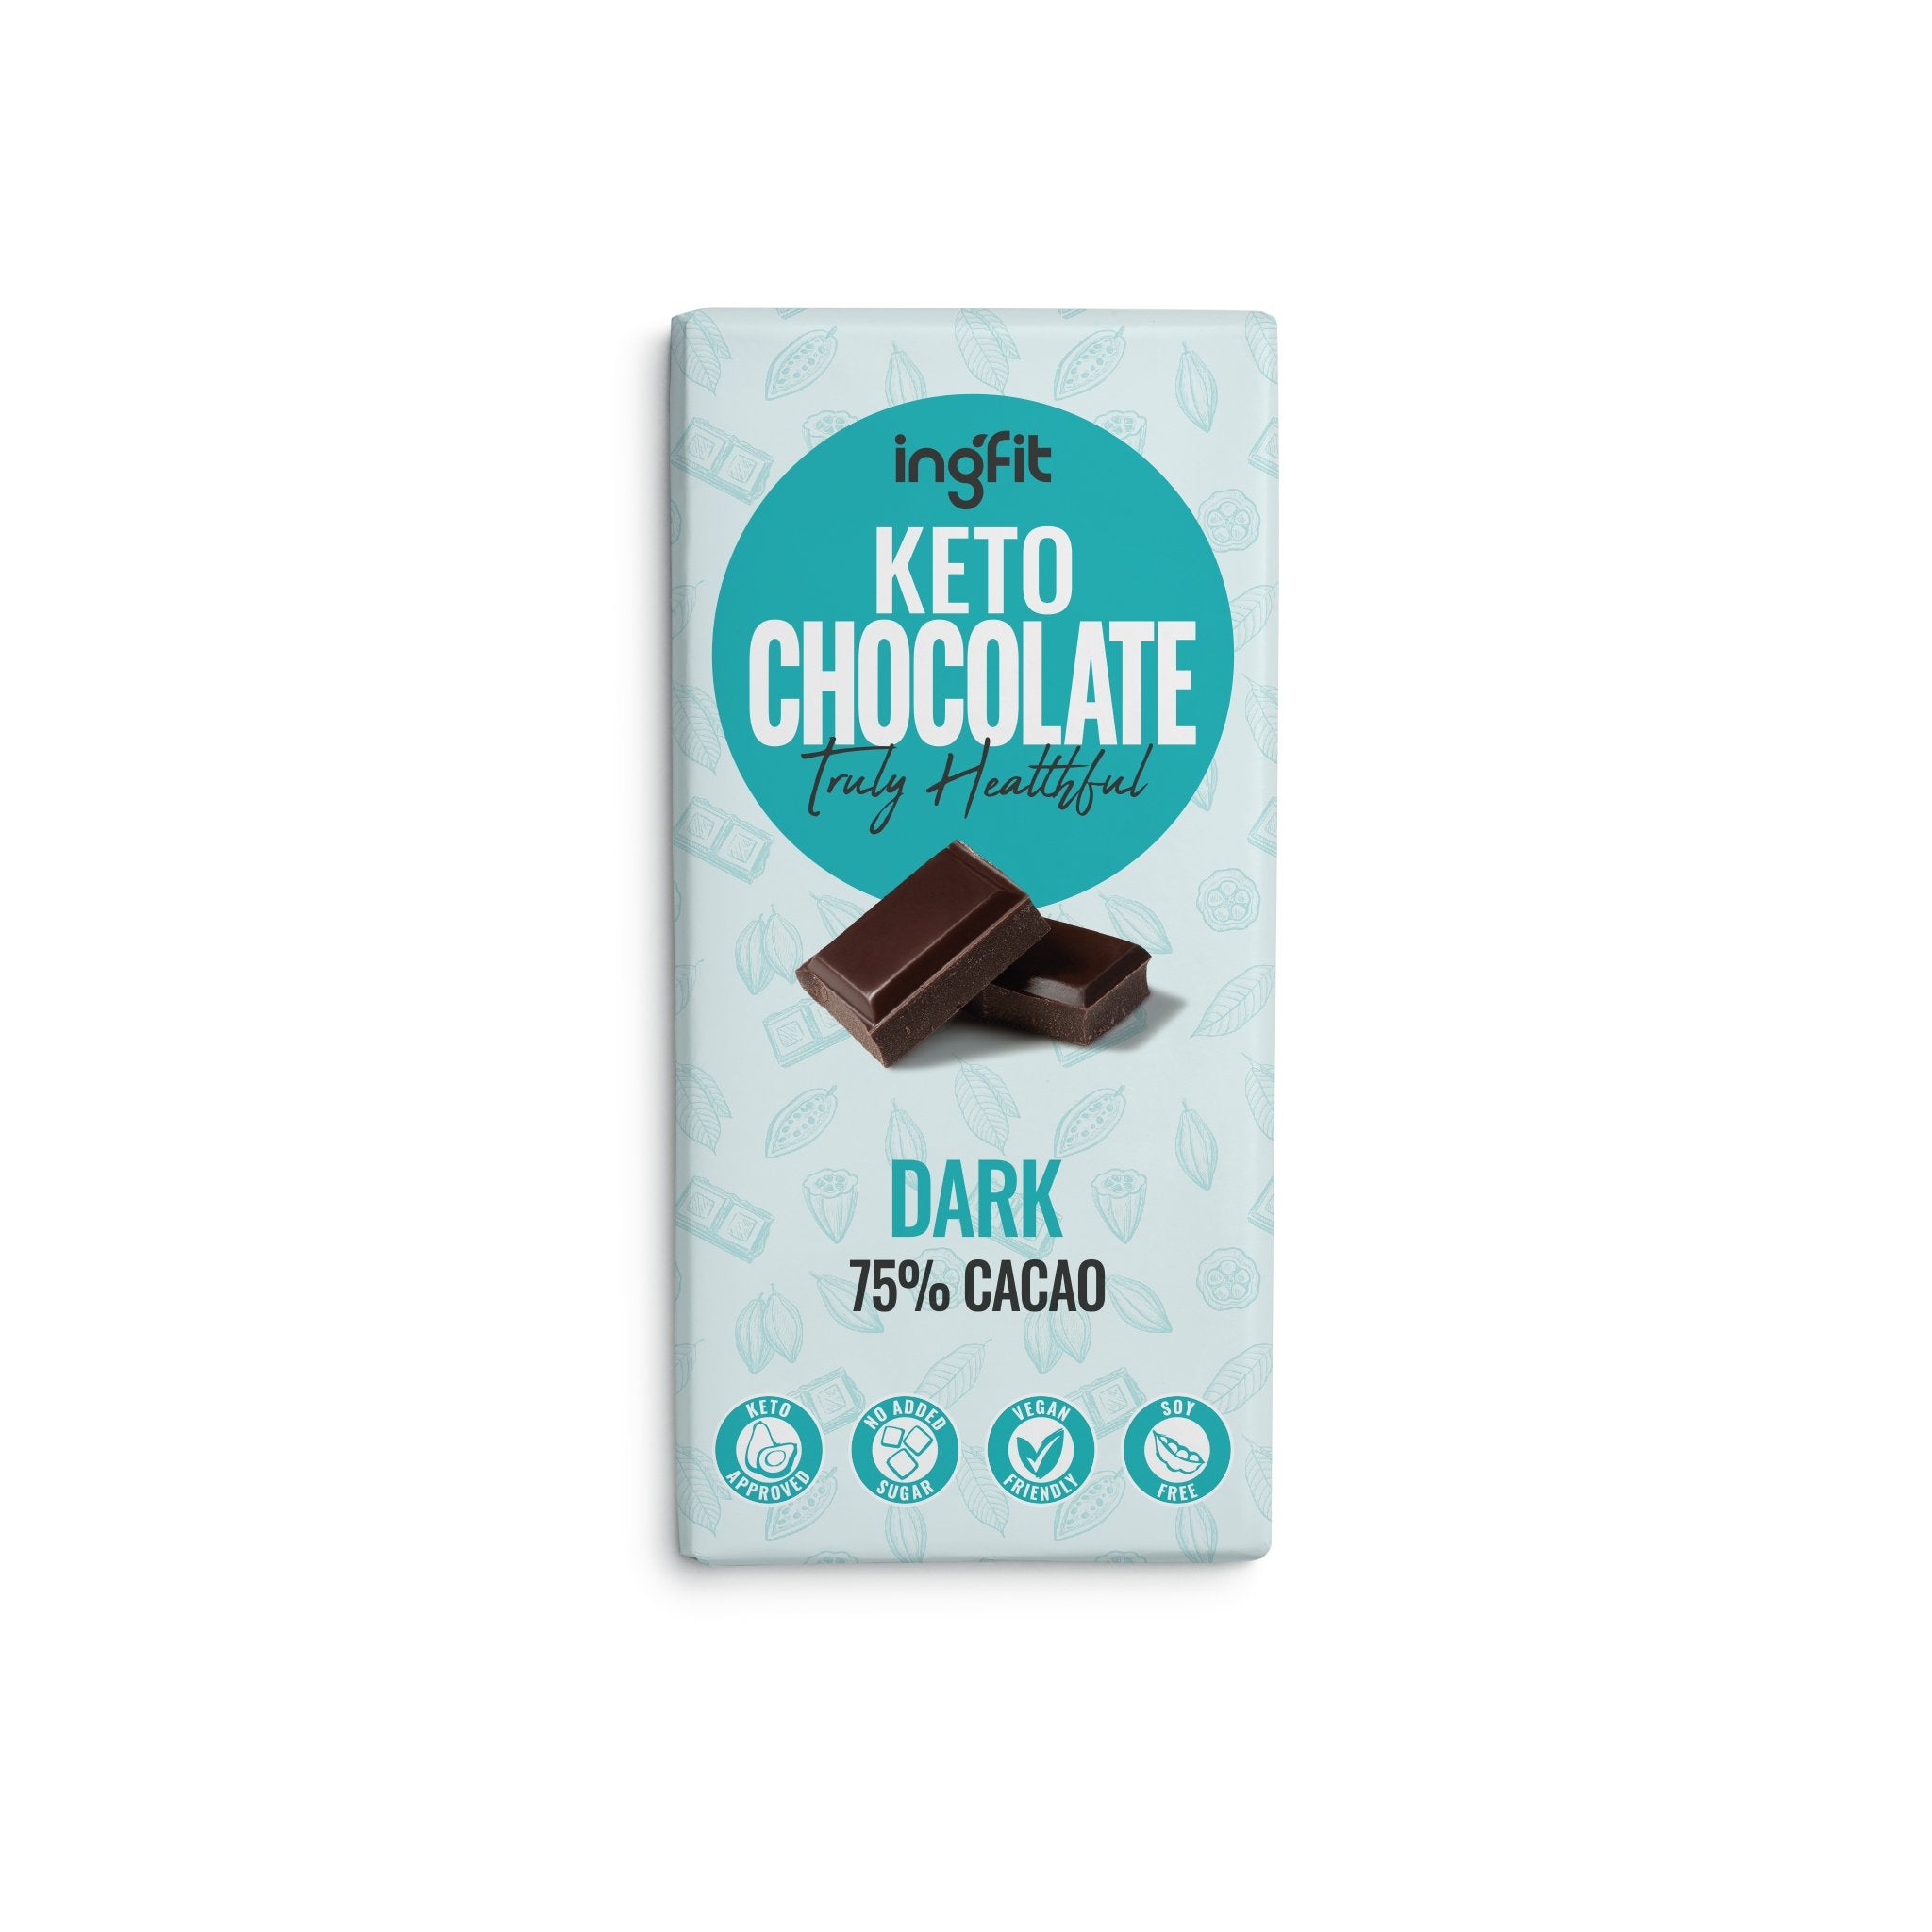 INGFIT Keto Dark Chocolate, 100g